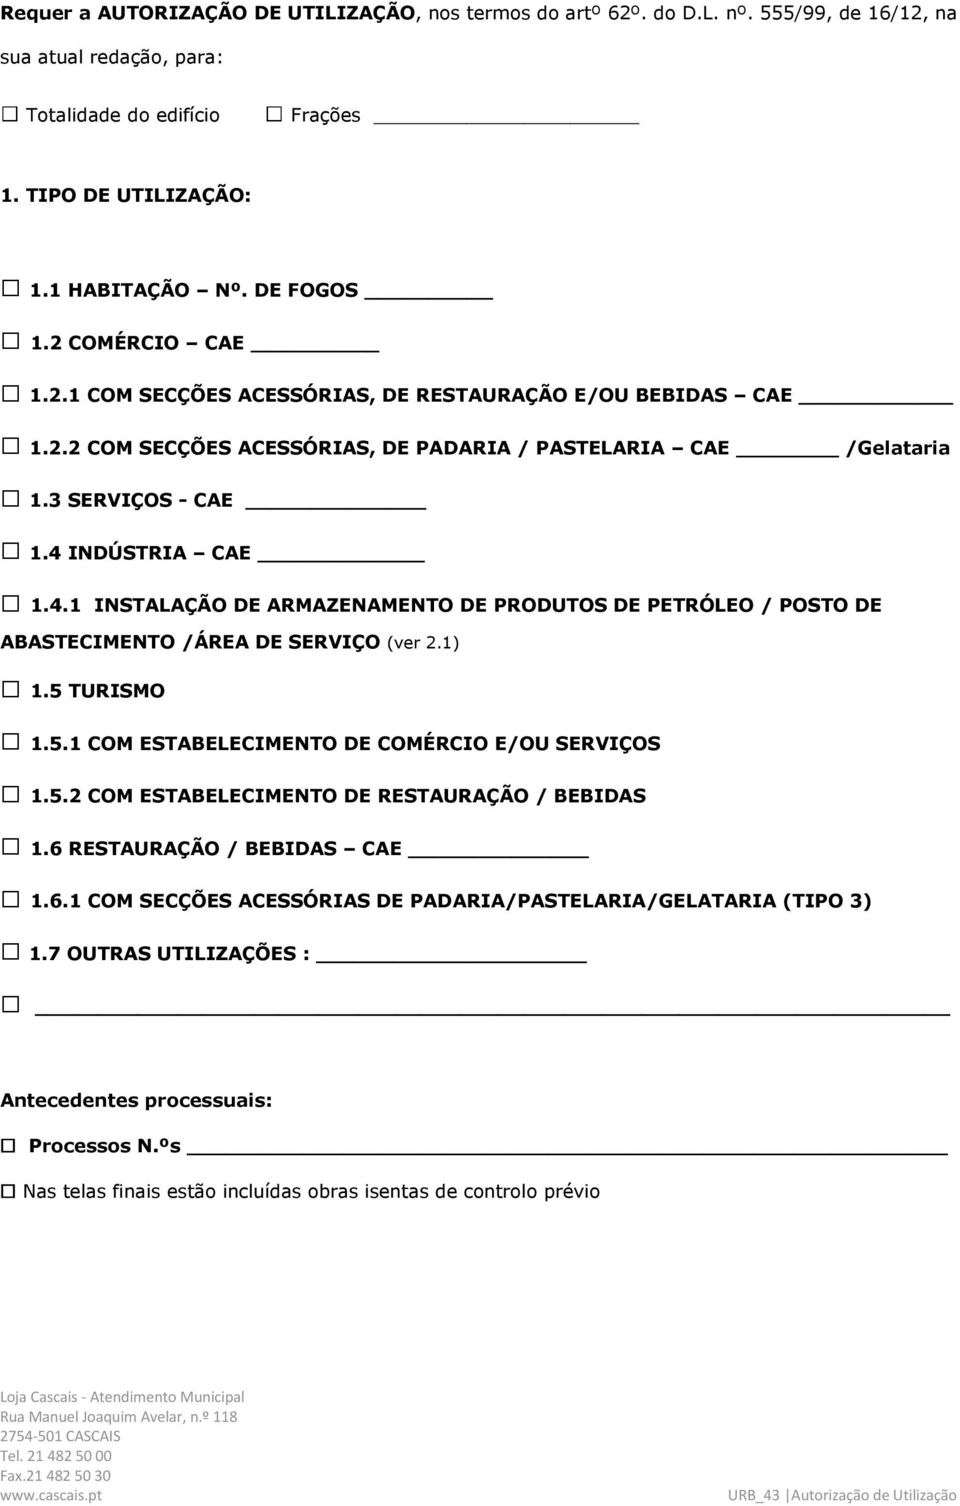 INDÚSTRIA CAE 1.4.1 INSTALAÇÃO DE ARMAZENAMENTO DE PRODUTOS DE PETRÓLEO / POSTO DE ABASTECIMENTO /ÁREA DE SERVIÇO (ver 2.1) 1.5 TURISMO 1.5.1 COM ESTABELECIMENTO DE COMÉRCIO E/OU SERVIÇOS 1.5.2 COM ESTABELECIMENTO DE RESTAURAÇÃO / BEBIDAS 1.